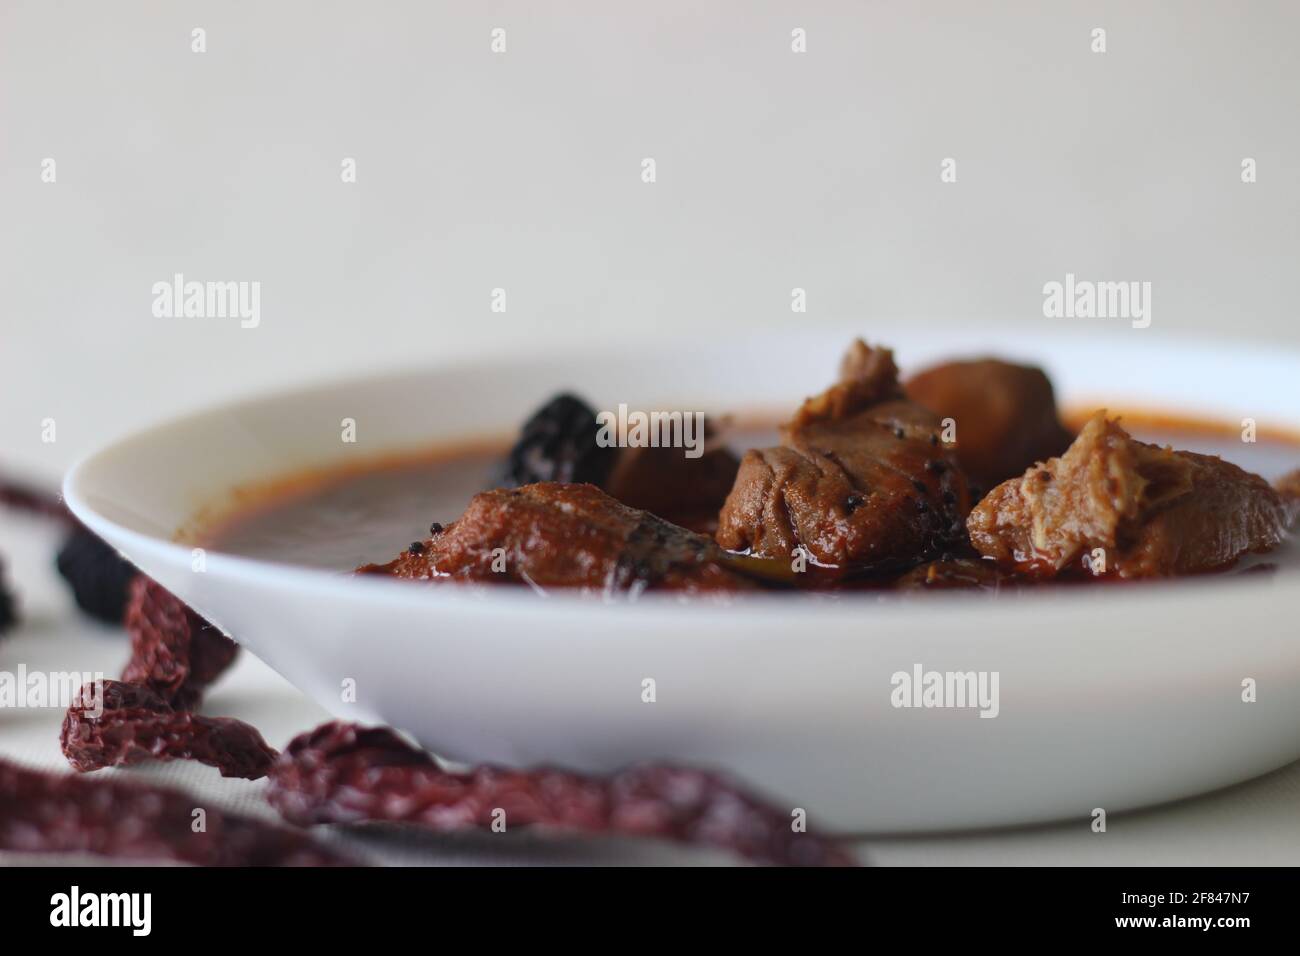 curry de pescado con salsa roja preparada al estilo tradicional de kerala. El pescado utilizado es el Bluefin trévally, conocido localmente como vatta. Grabado sobre fondo blanco Foto de stock